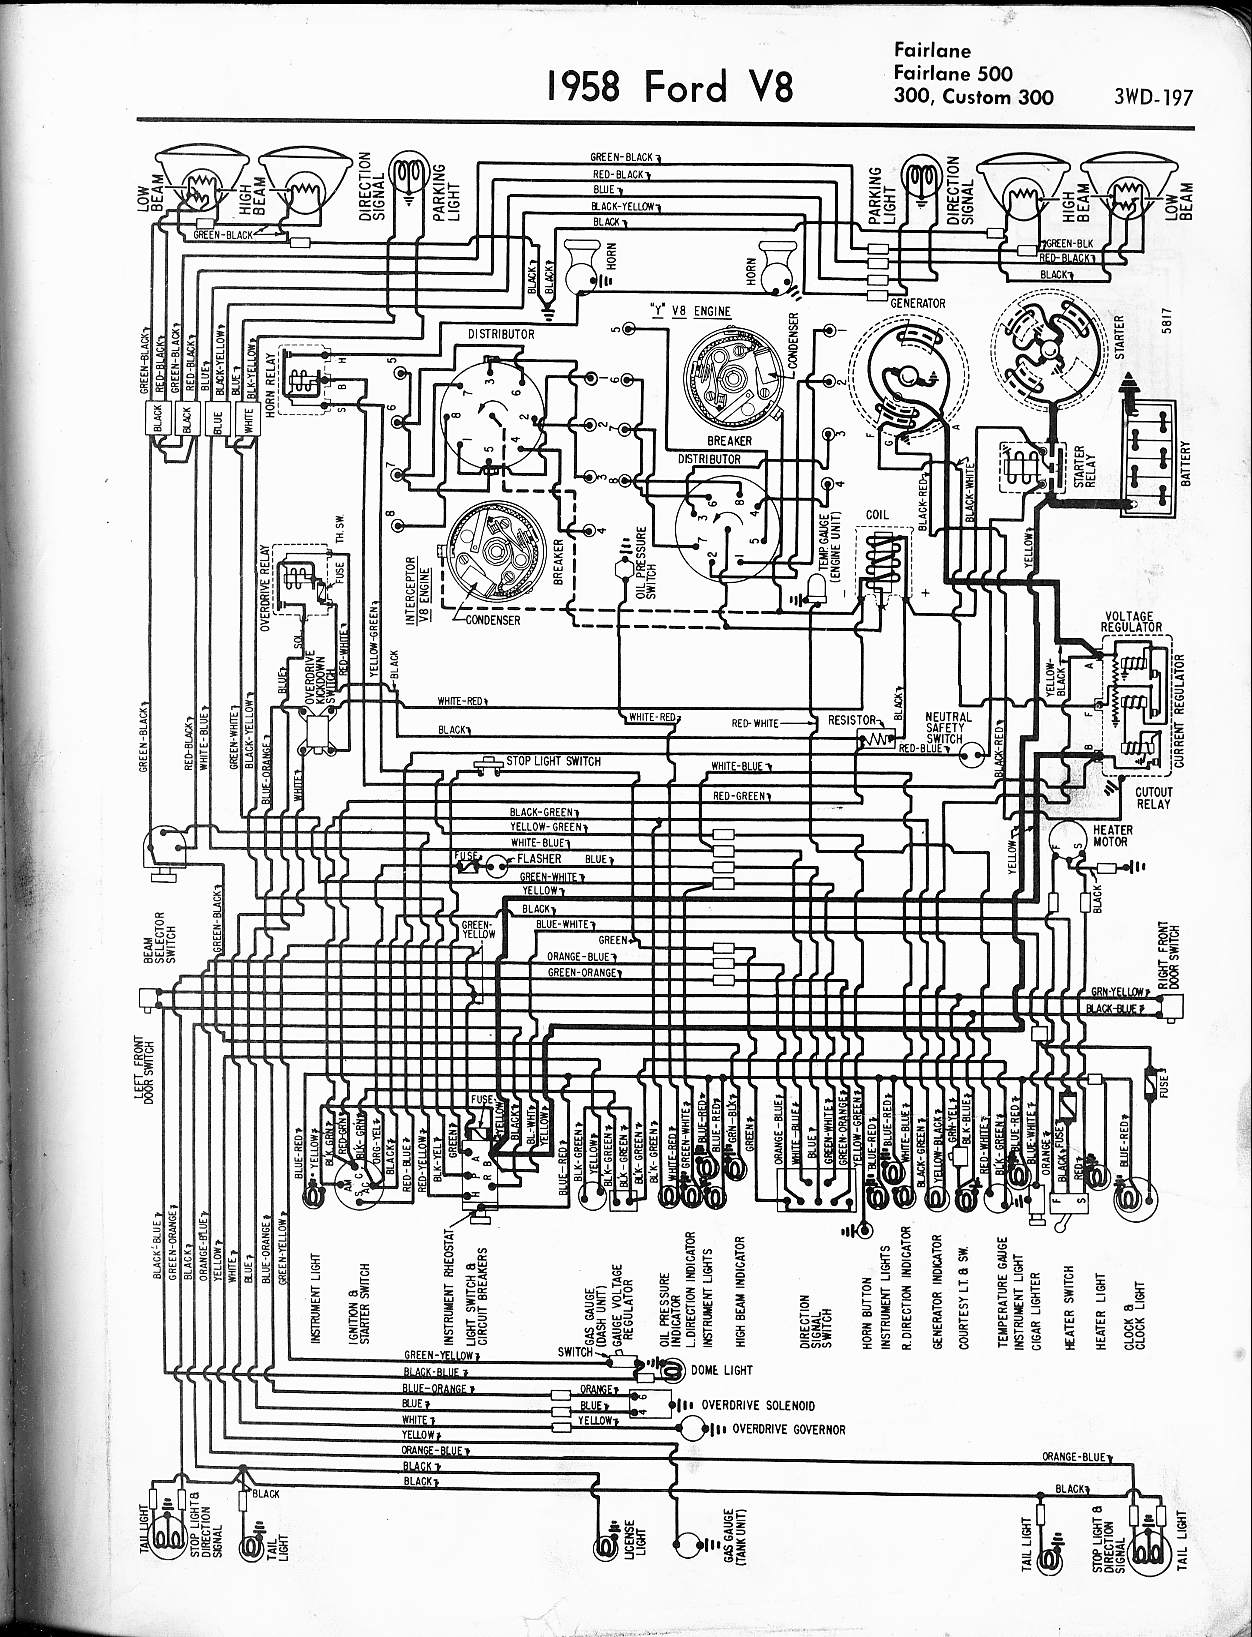 Schematics trucks ford wiring diagrams #7